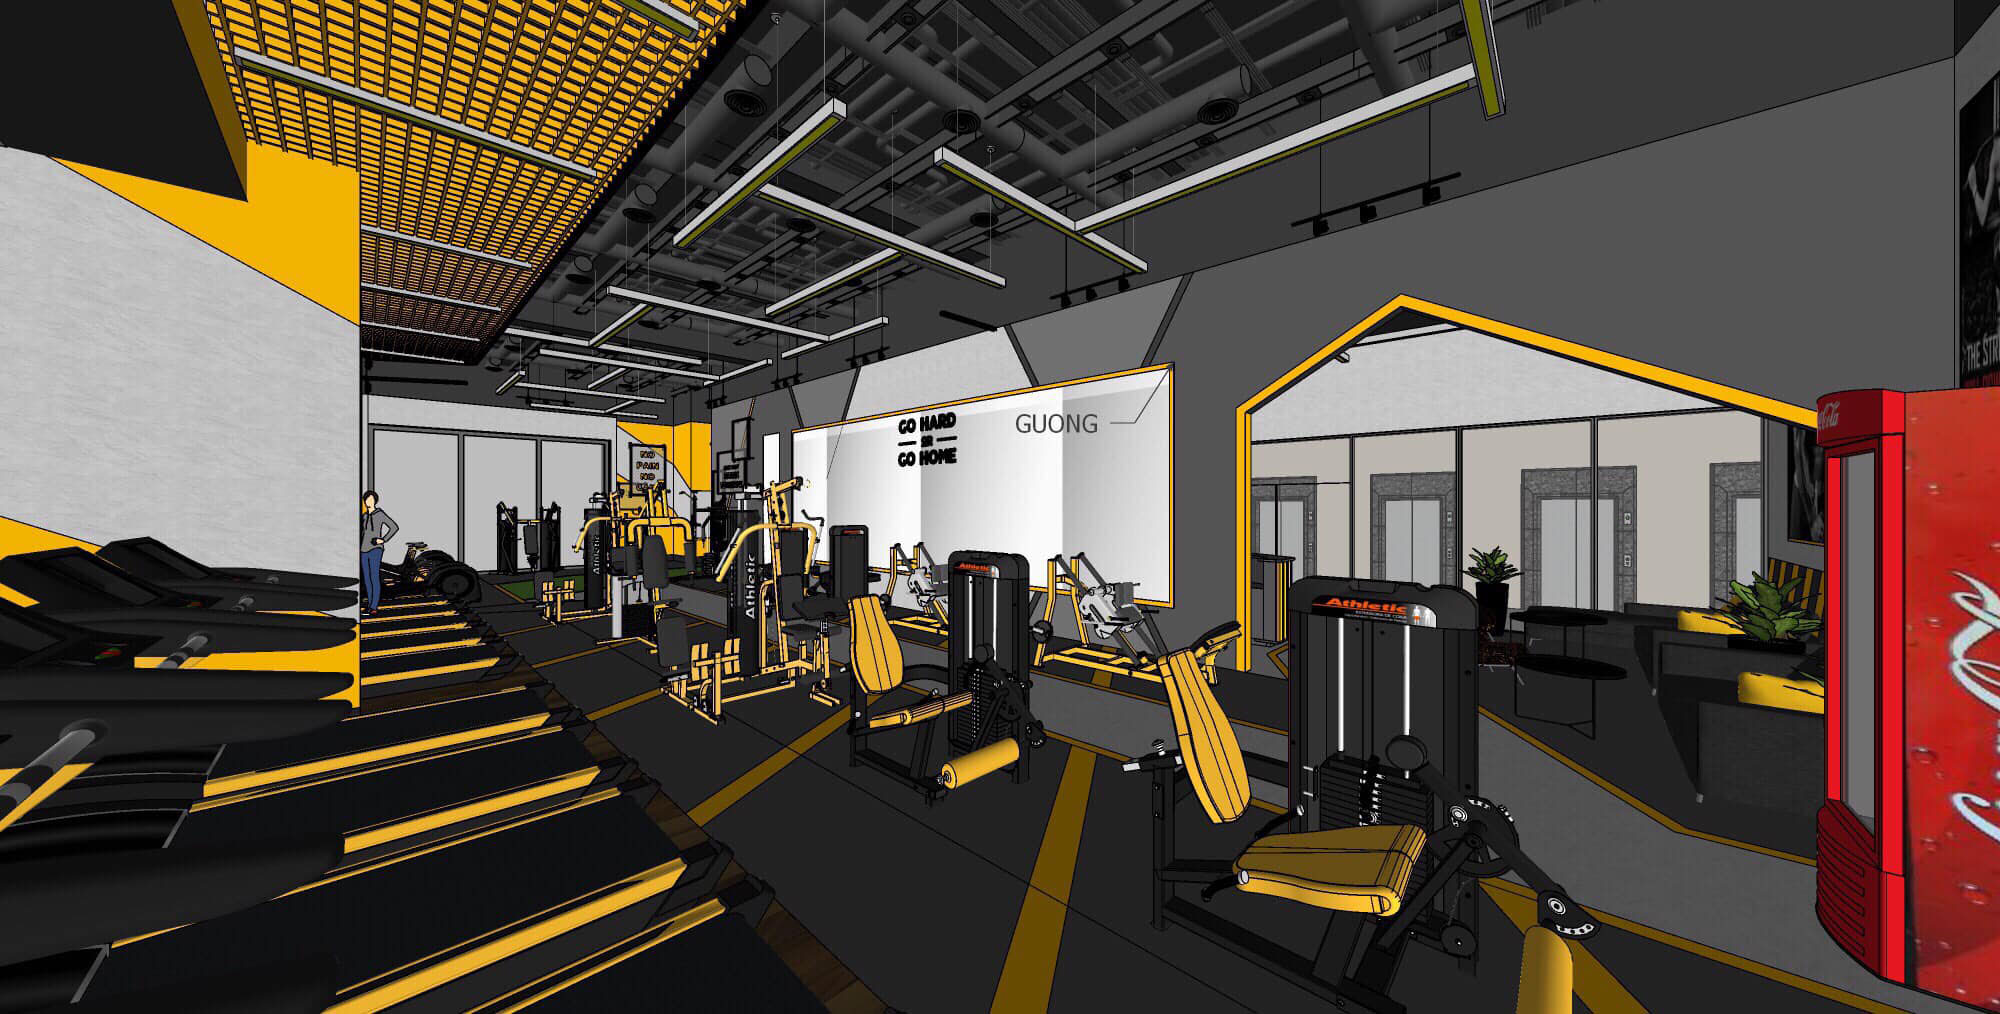 setup mở phòng gym tại long biên hà nội t t fitness